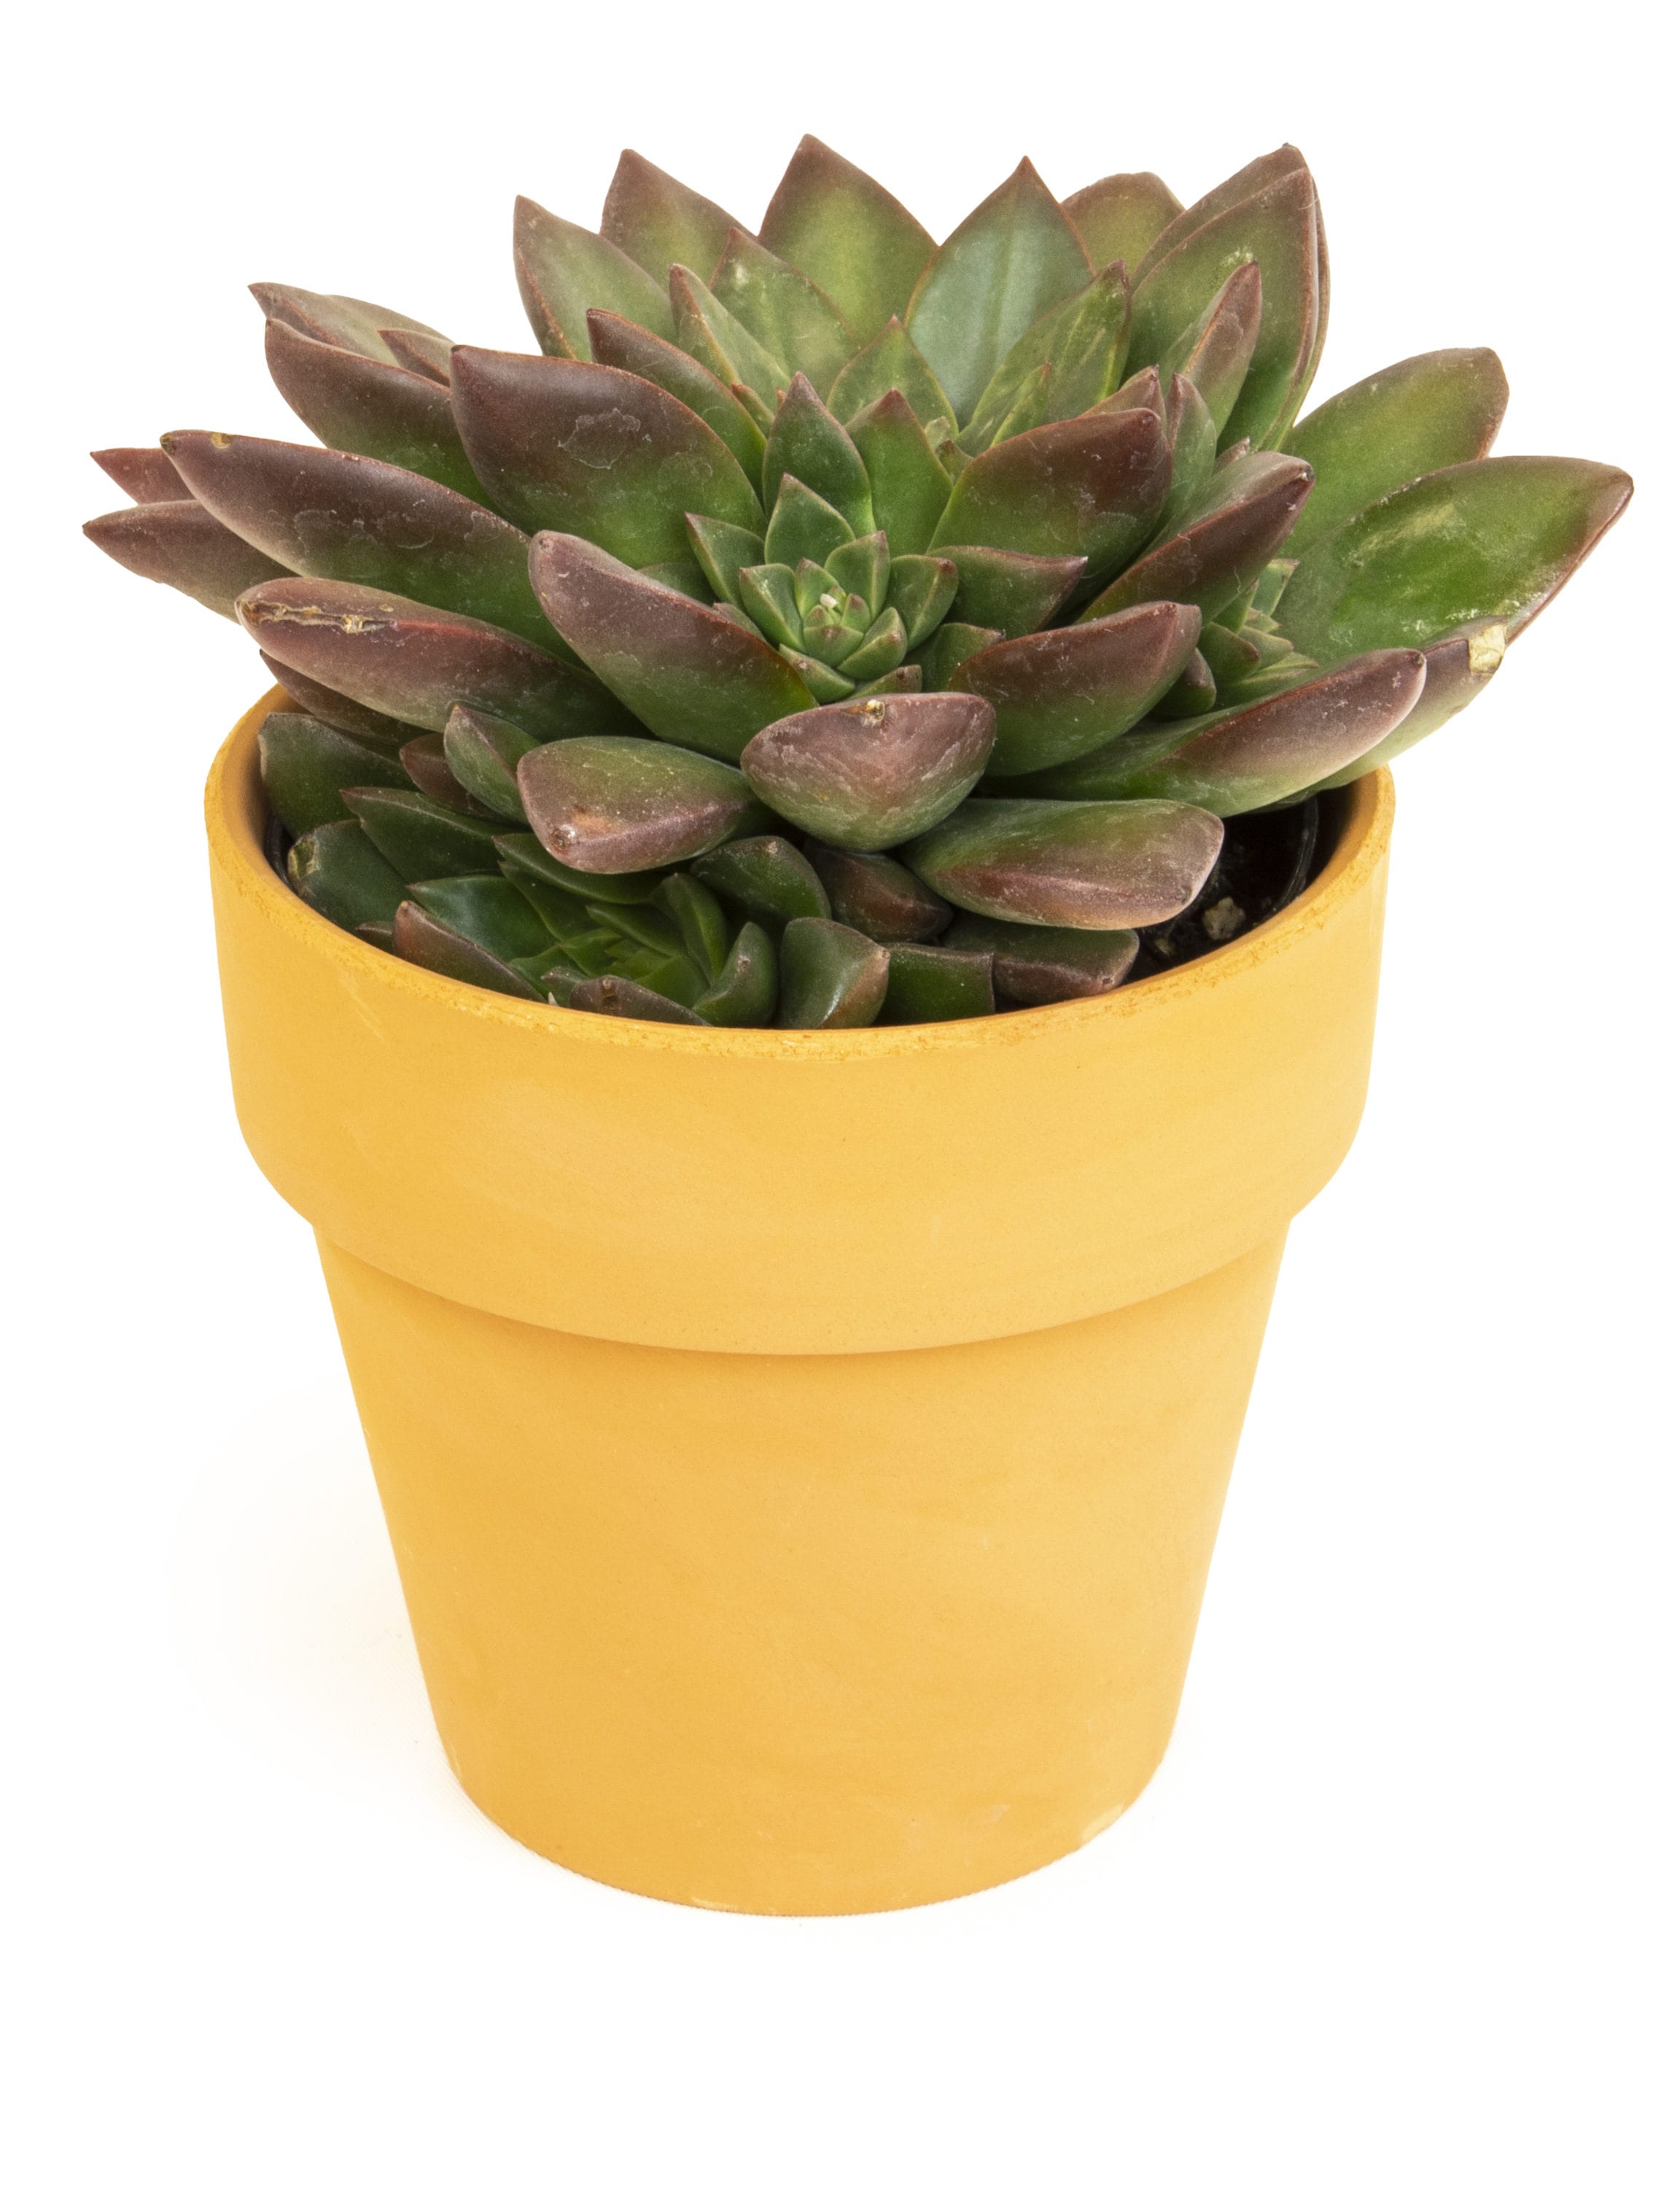 VIRTUNE Adorable Indoor Plant Pots. 5 Flower Pot & 2 Succulent Pot with drainage. Small Plant Pots, Cute Pots, Succulent Planter (Light Yellow)